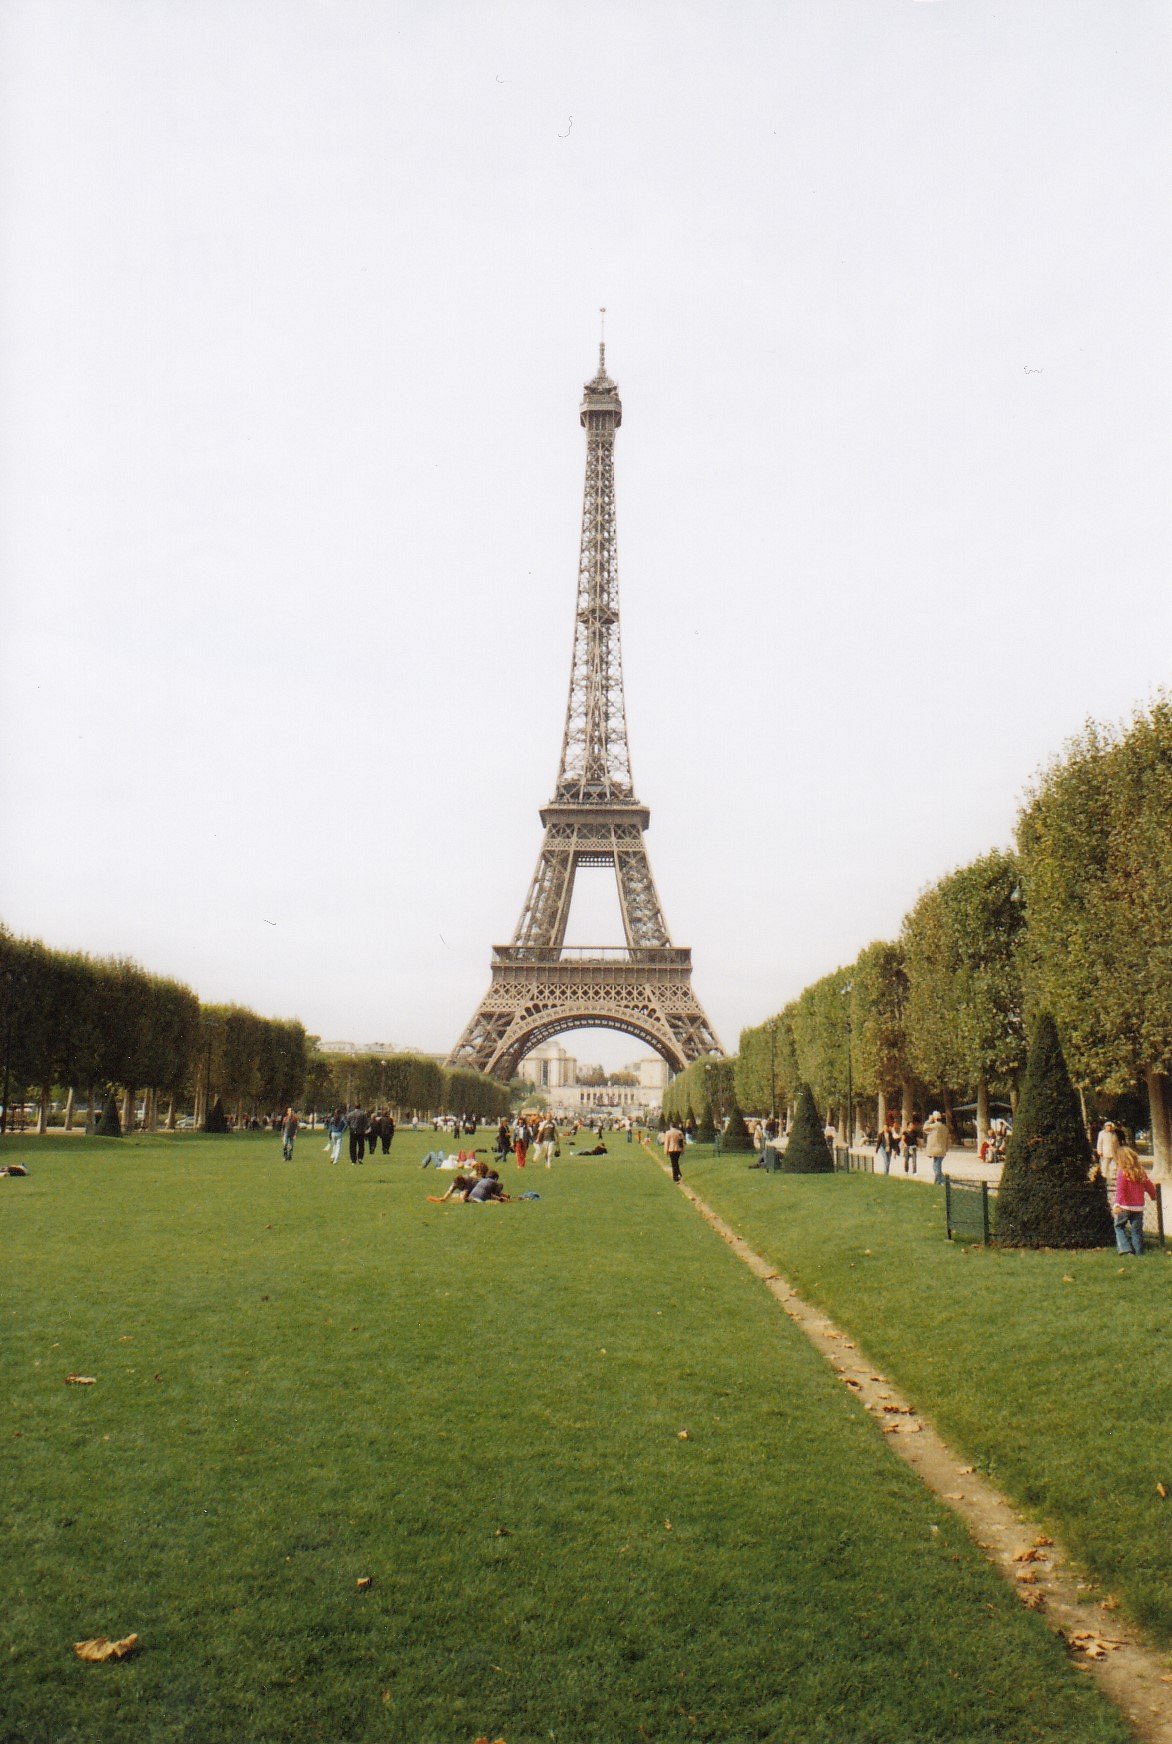 Tháp Eiffel: Tháp Eiffel - một trong những biểu tượng nổi tiếng nhất của Paris và thế giới. Hãy xem hình ảnh liên quan để tìm hiểu về lịch sử và kiến trúc đặc sắc của tháp Eiffel và đắm mình trong vẻ đẹp lộng lẫy của nó.